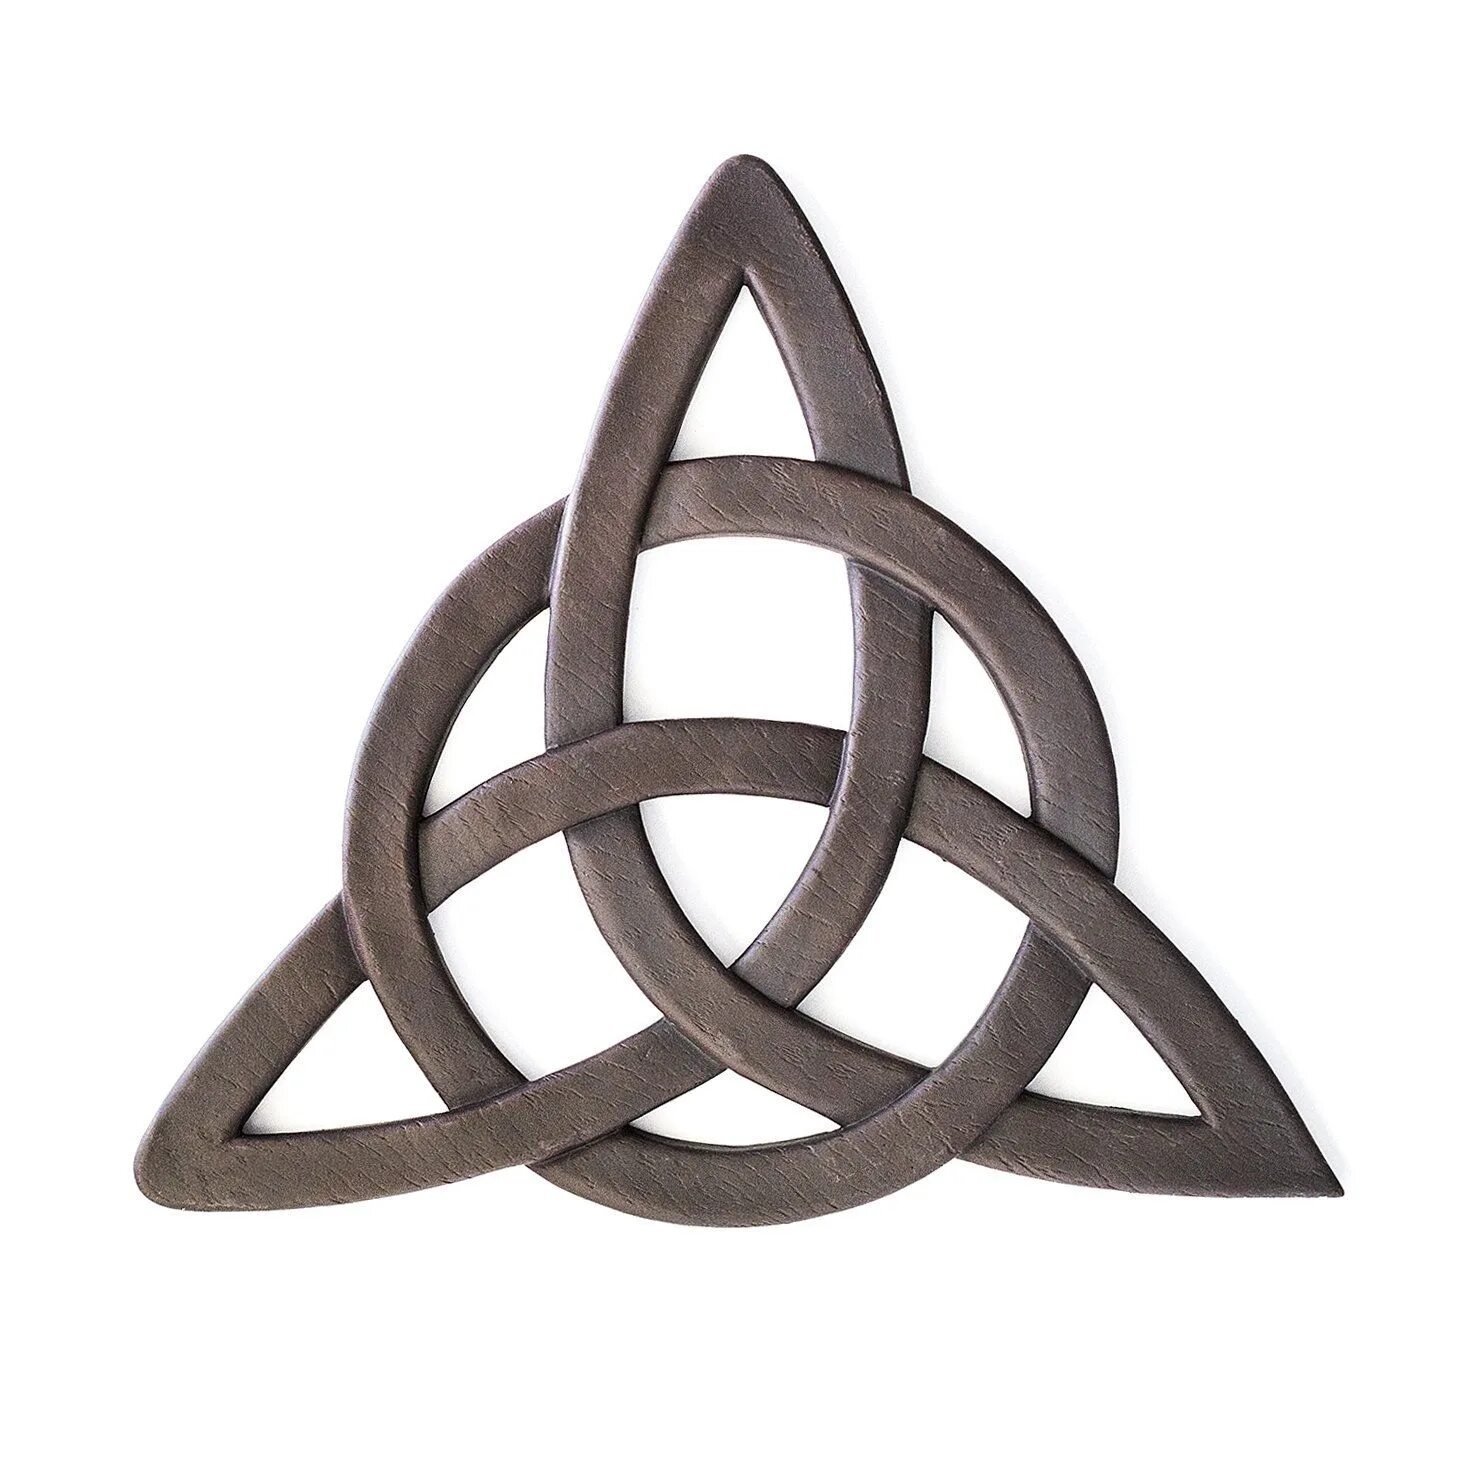 Трикветр (Триквестр или Трикветра). Триглав трикветр. Кельтский трикветр символ. Кельтский узел трикветр. Круг верности